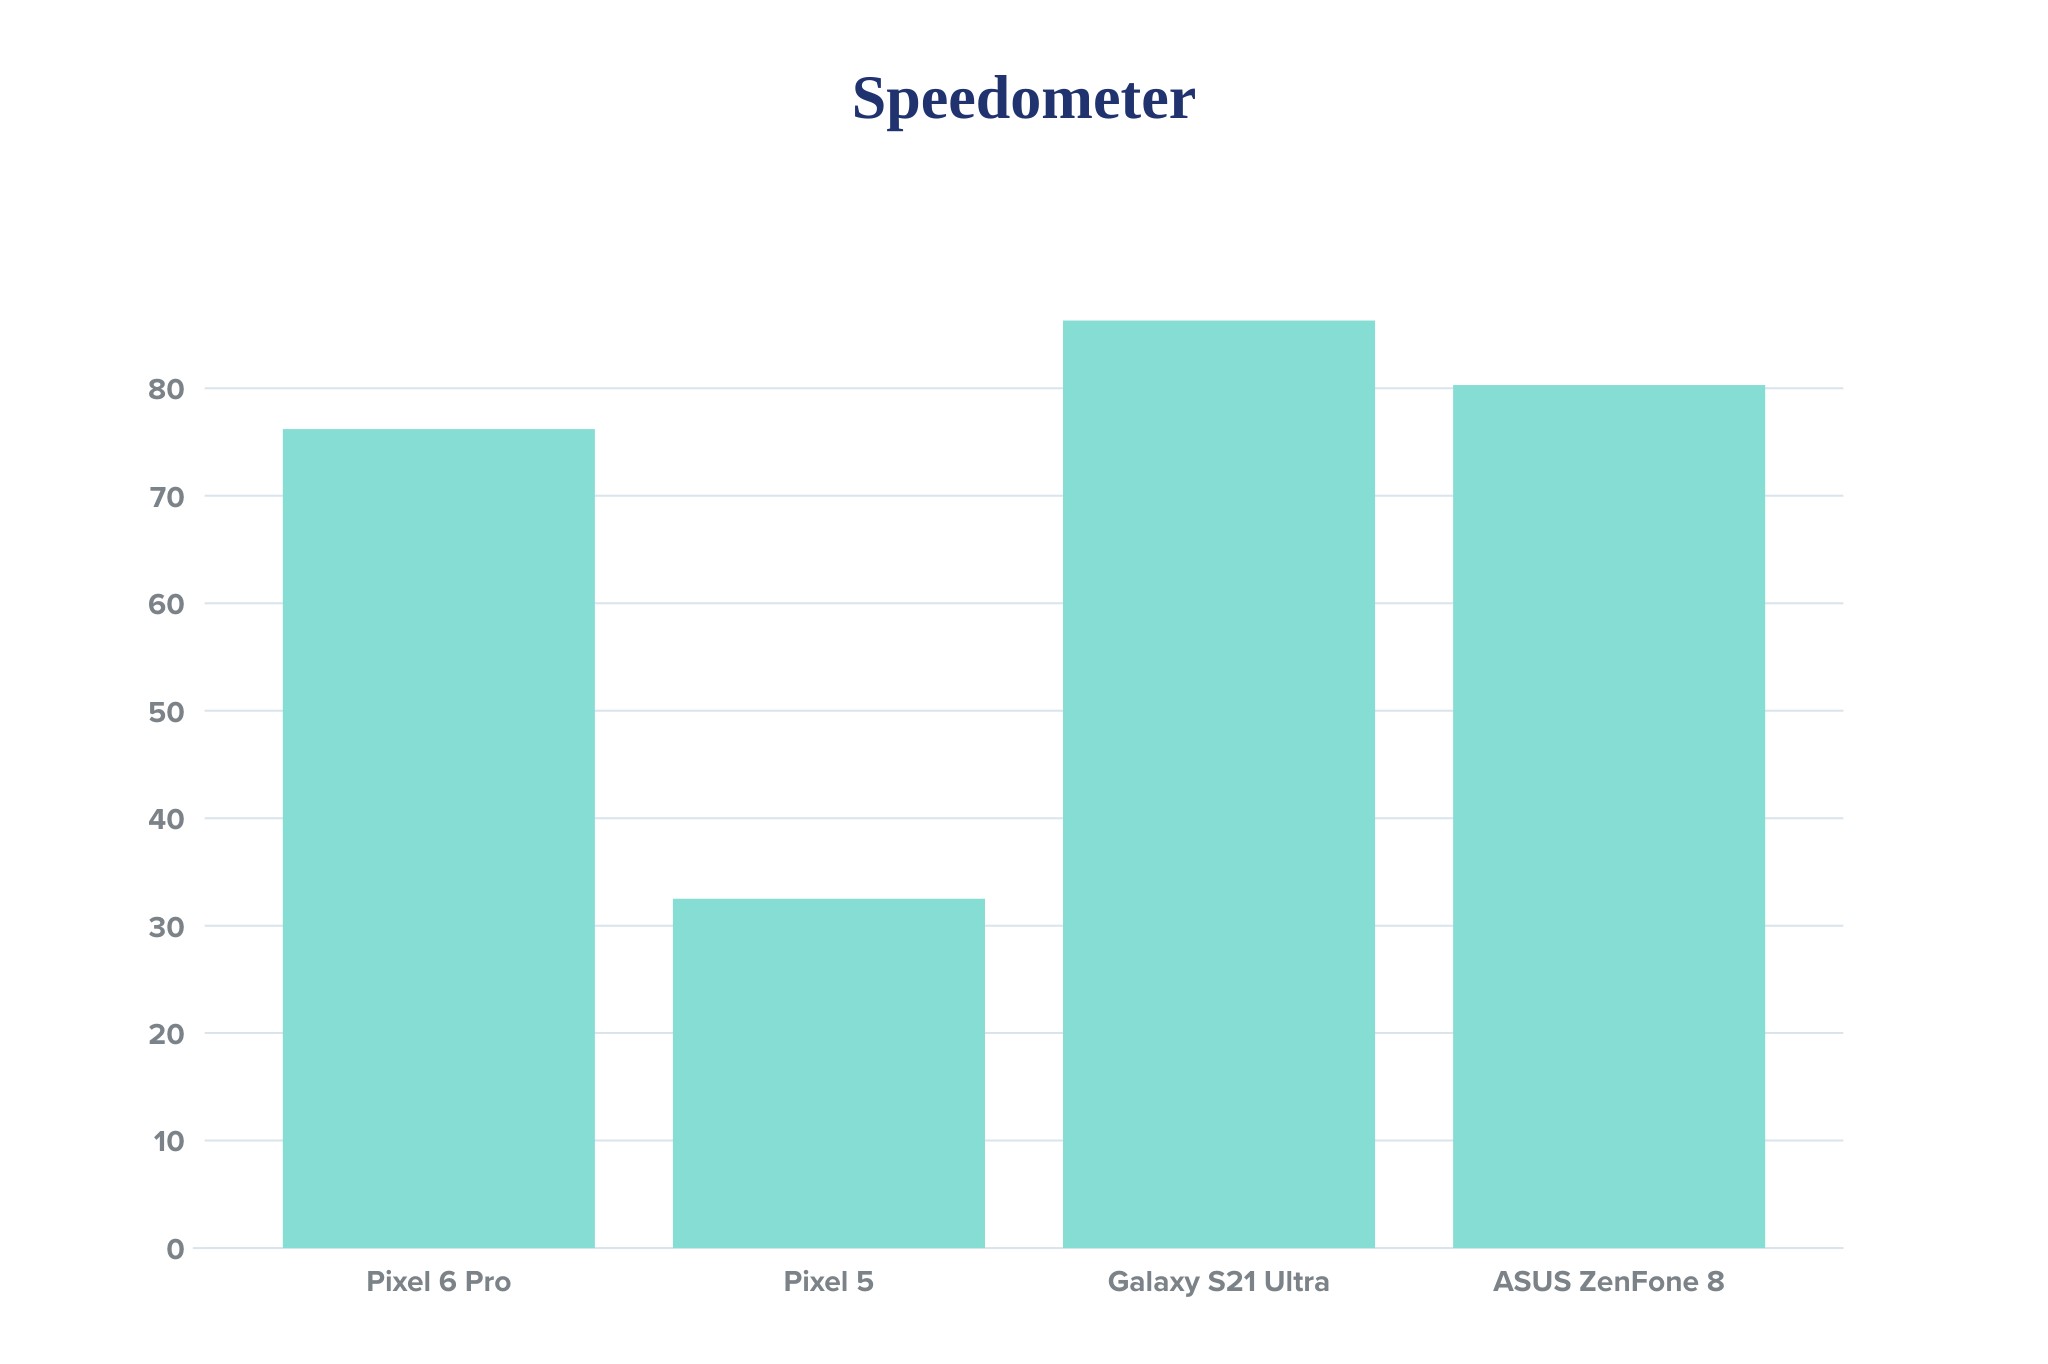 pixel-6-pro-speedometer-benchmark.jpg